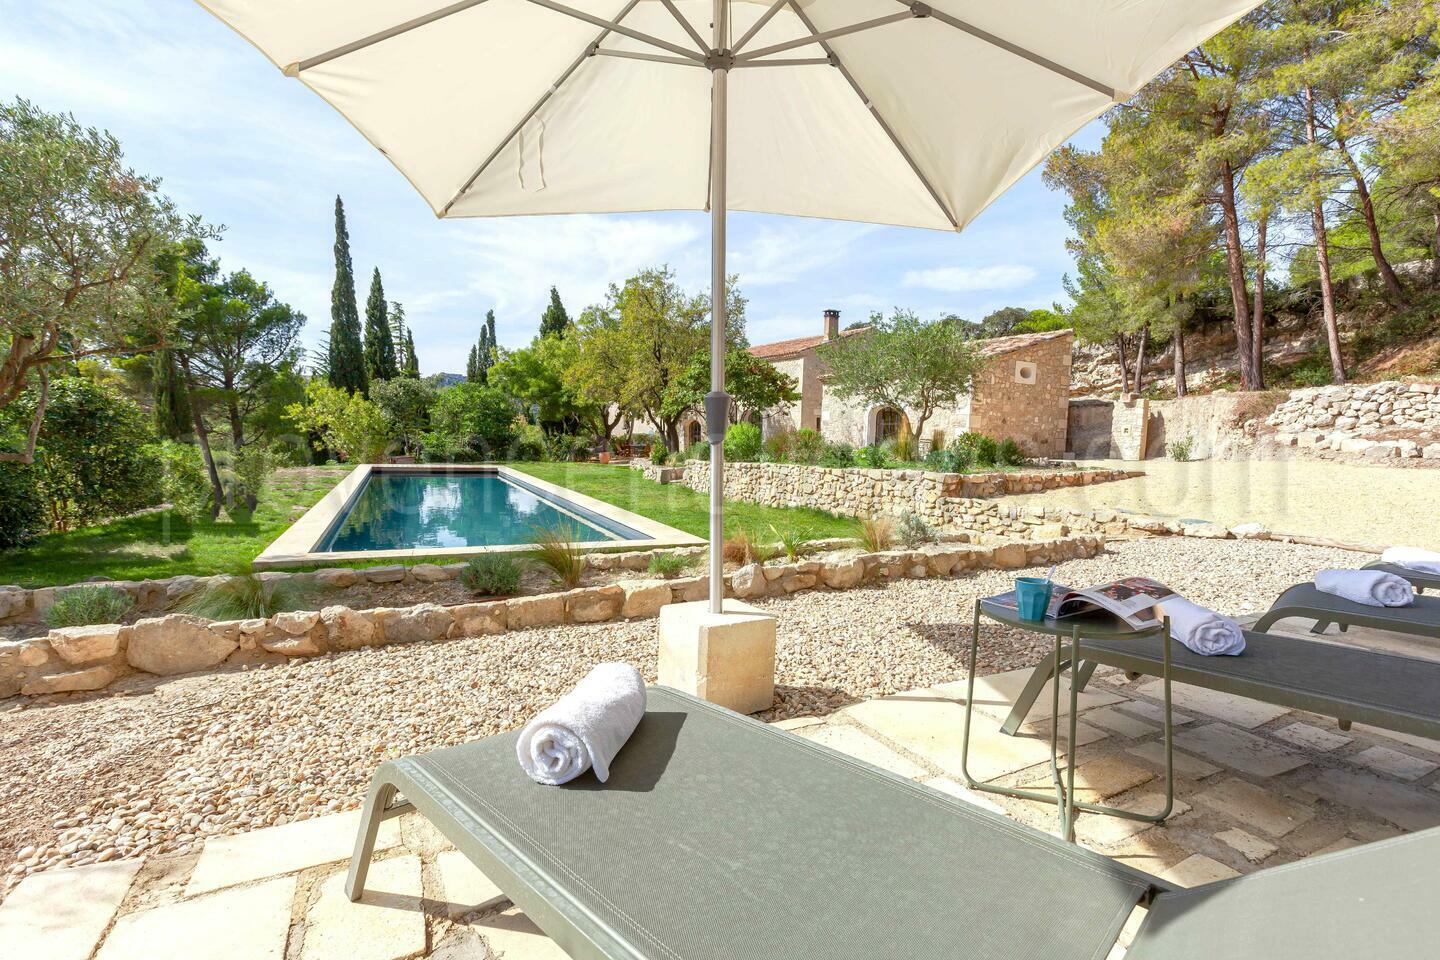 Location de vacances aux Baux-de-Provence 1 - Mas des Roches: Villa: Exterior